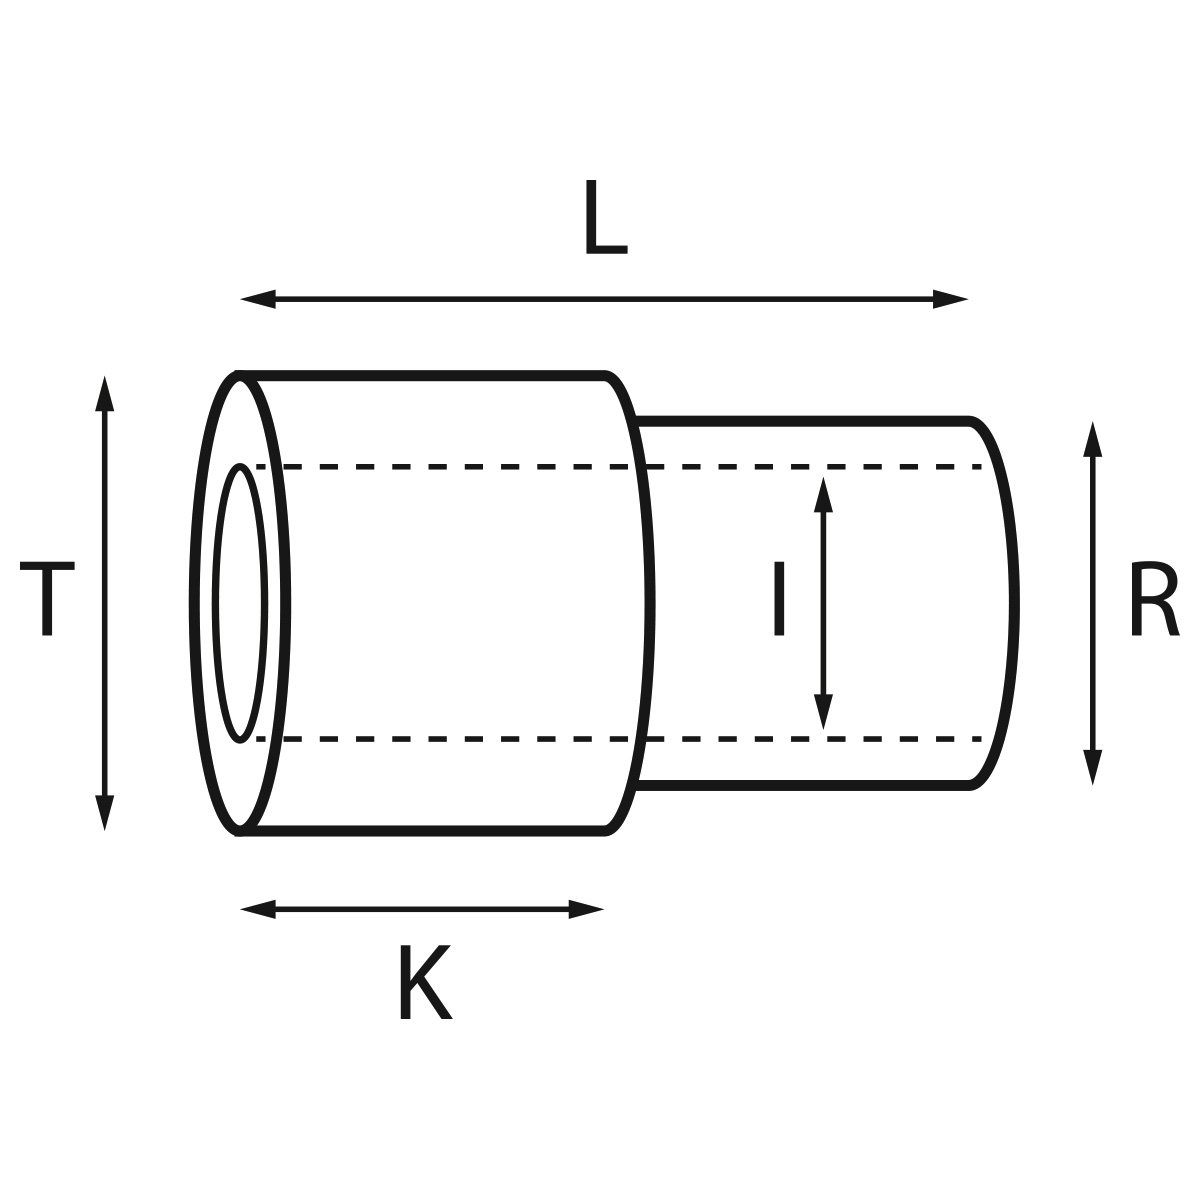 Gehäusetube Typ AS 13826, Tubus Ø 2 mm, Gesamtlänge 3,9 mm, für wasserdichte Kronen